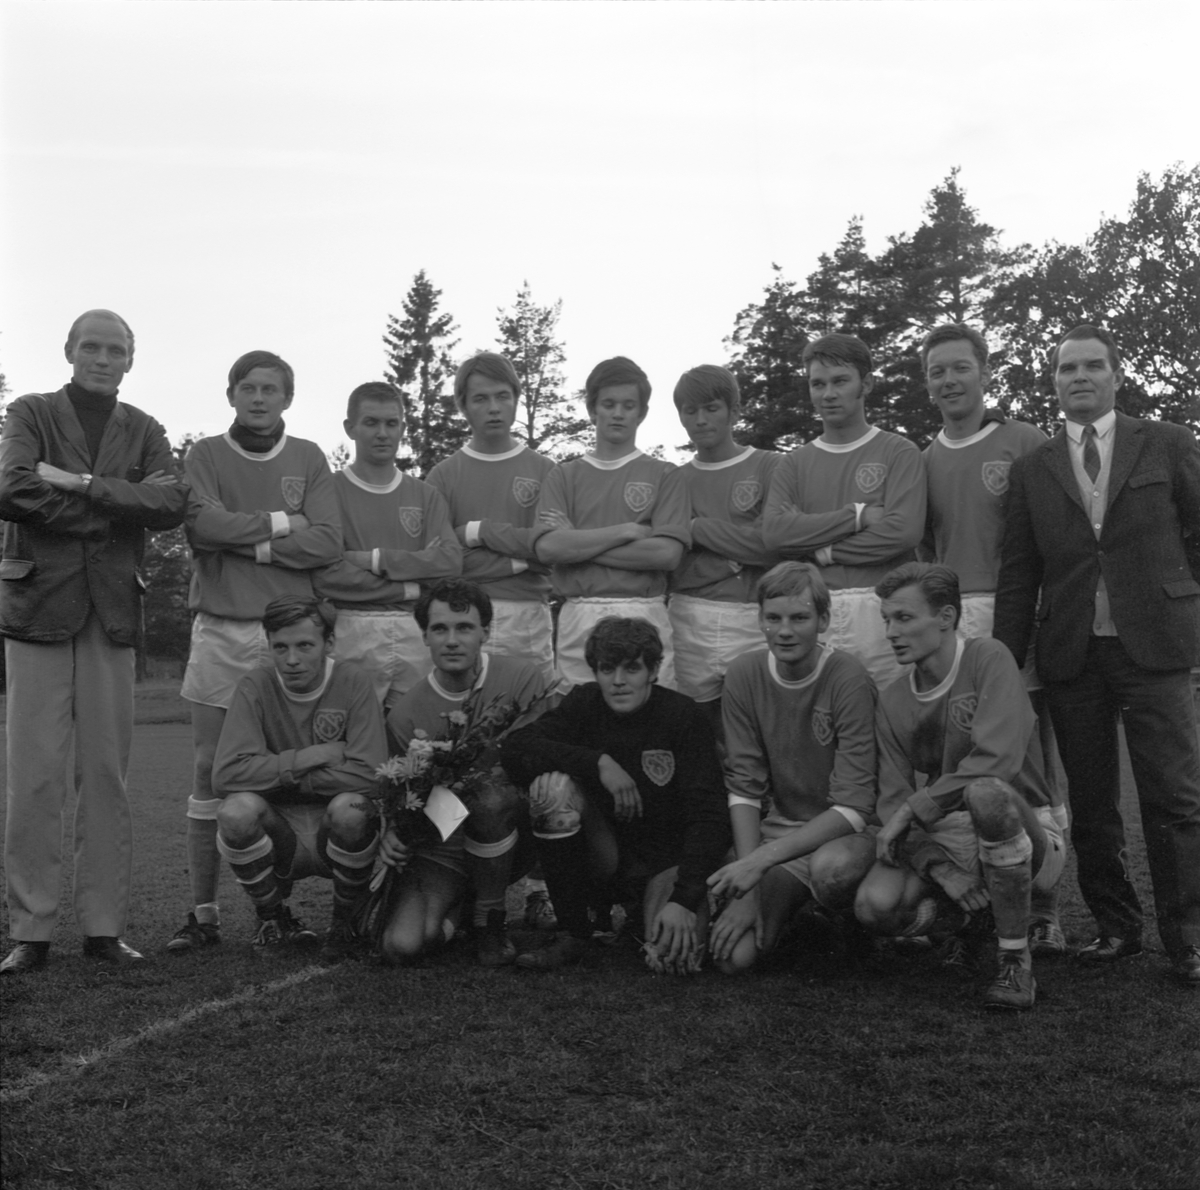 Söderfors vinnare av serien, Uppland 1969